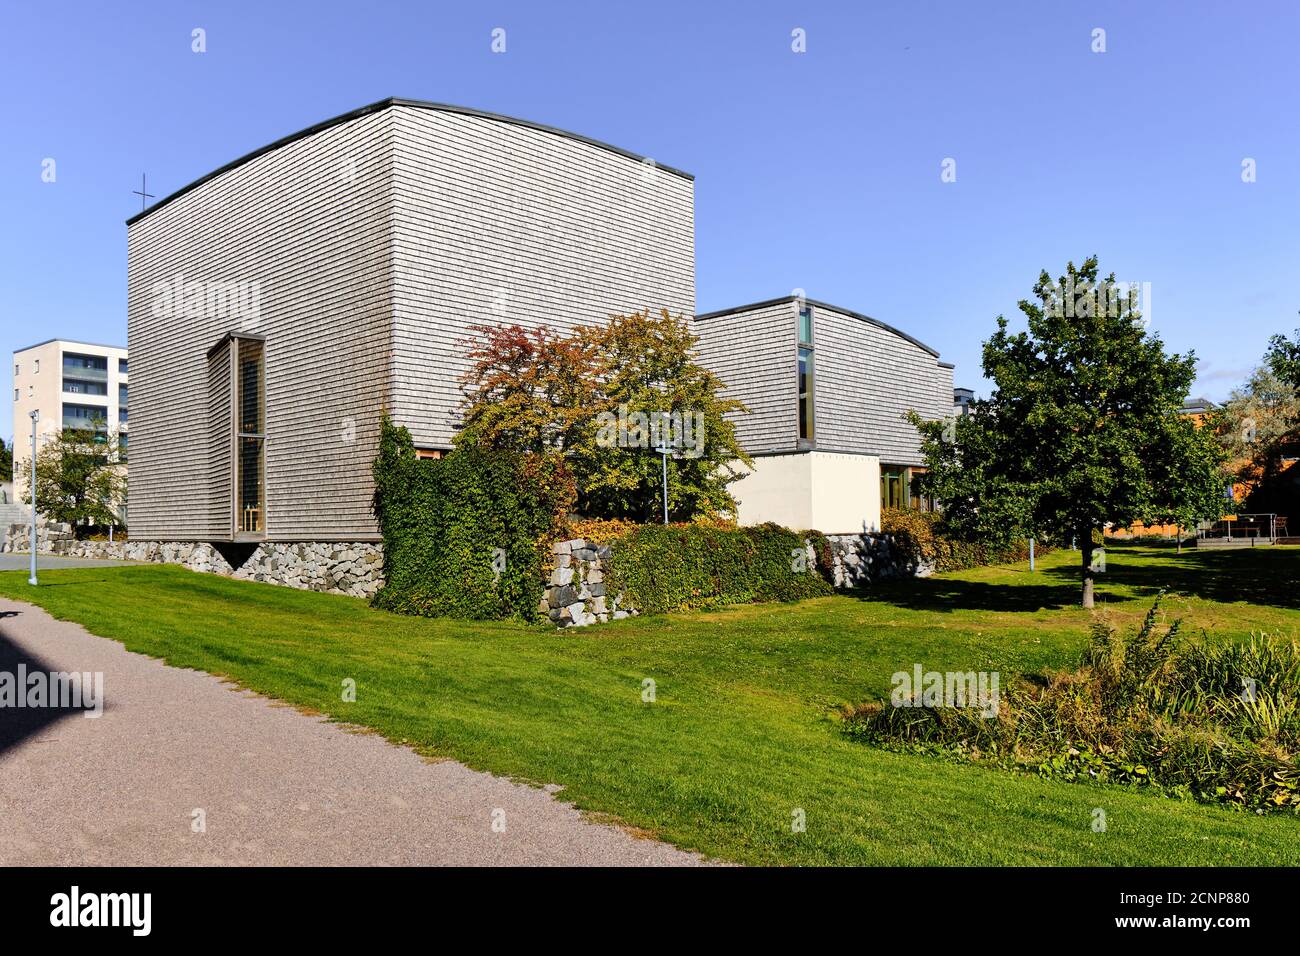 Helsinki, Finlandia - 13 settembre 2020: Chiesa luterana di Viikki. Moderna architettura nordica in legno. Foto Stock